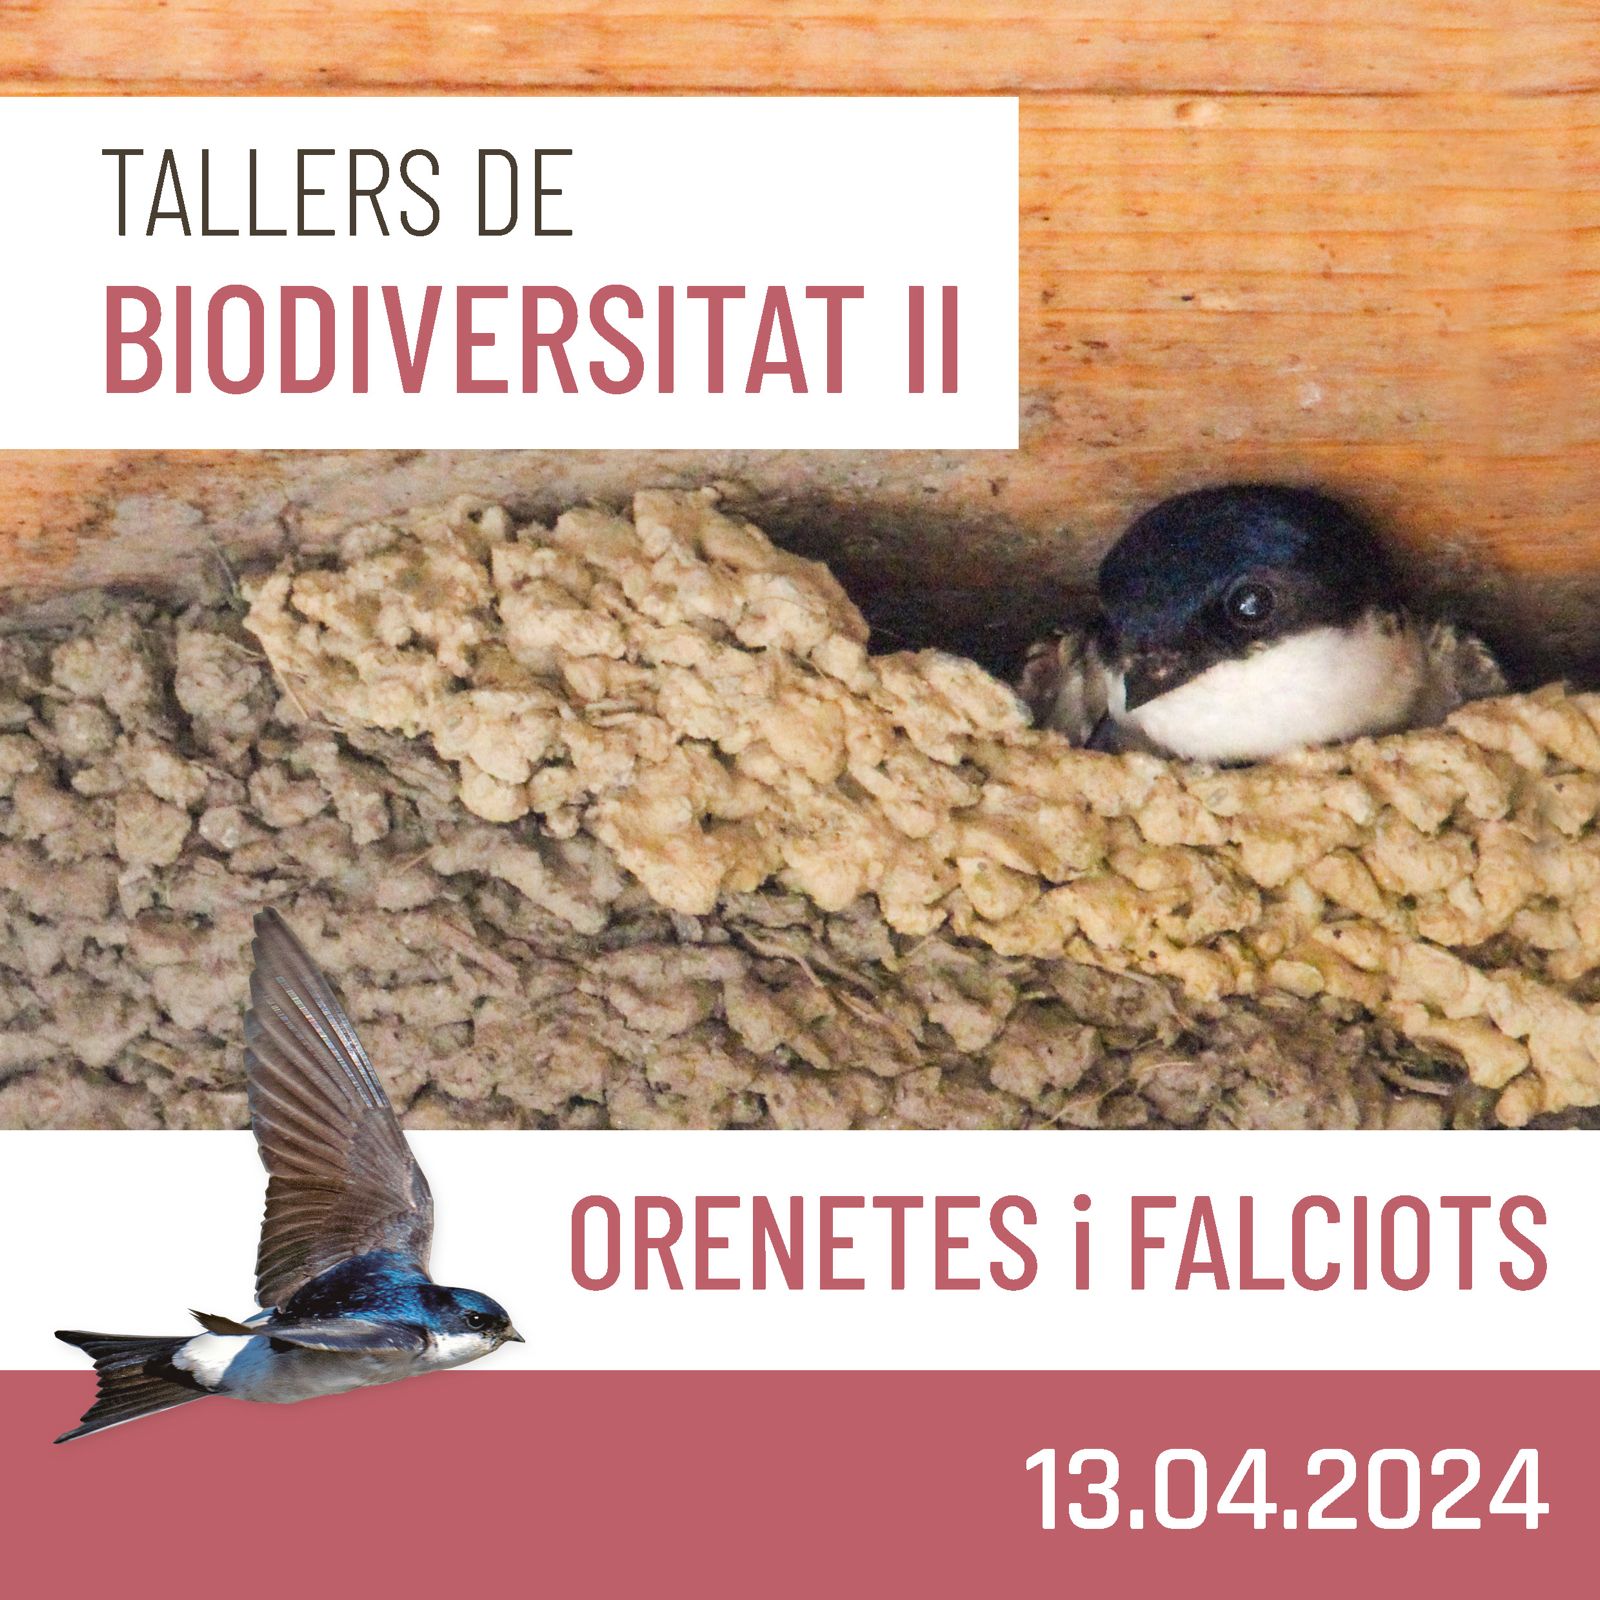 Tallers de Biodiversitat (II) – Orenetes i falciots